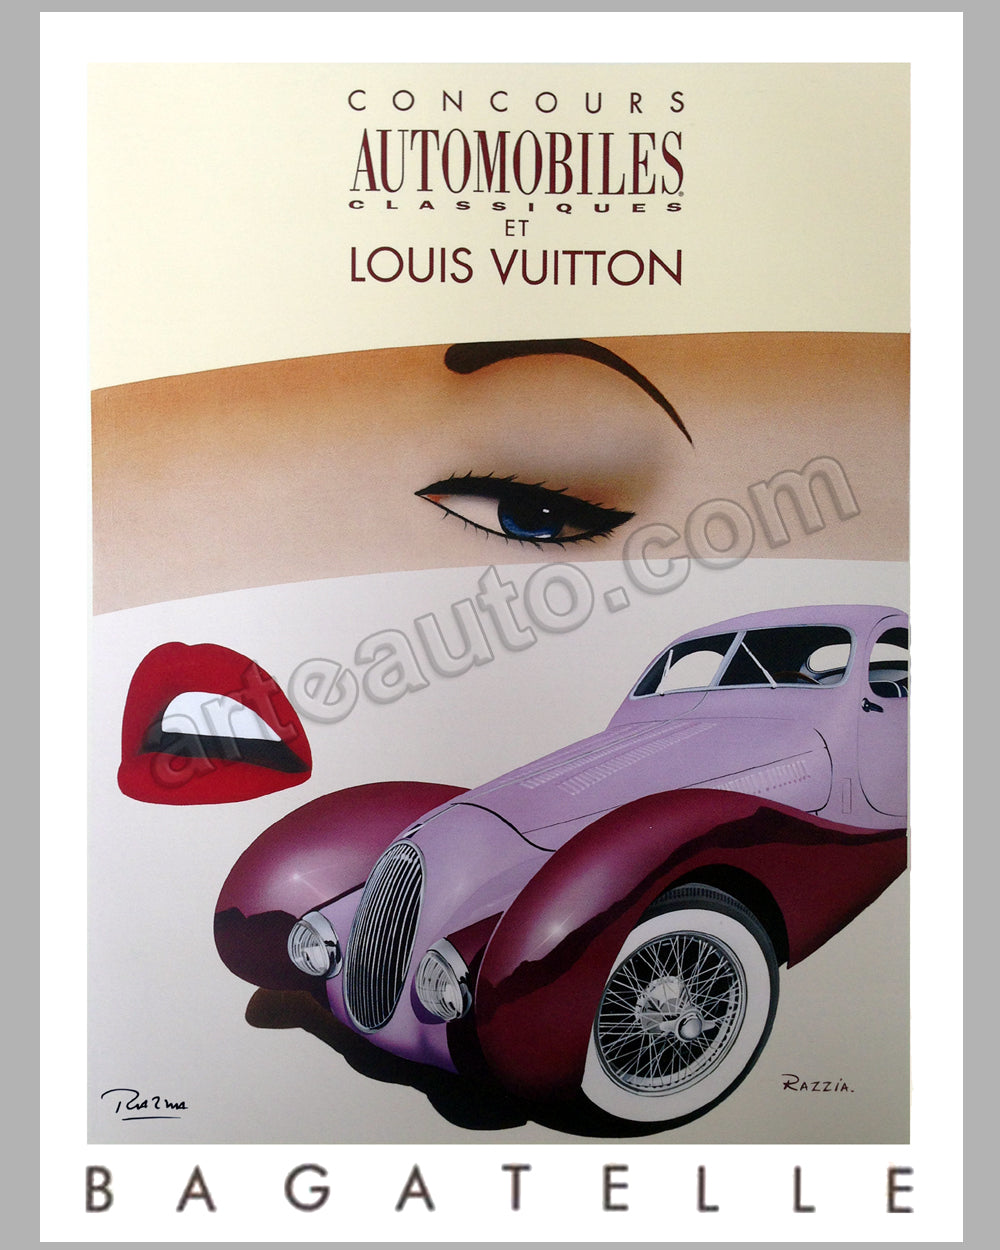 Louis Vuitton Trophy - Nice Cote d’Azur 2009 large poster by Razzia